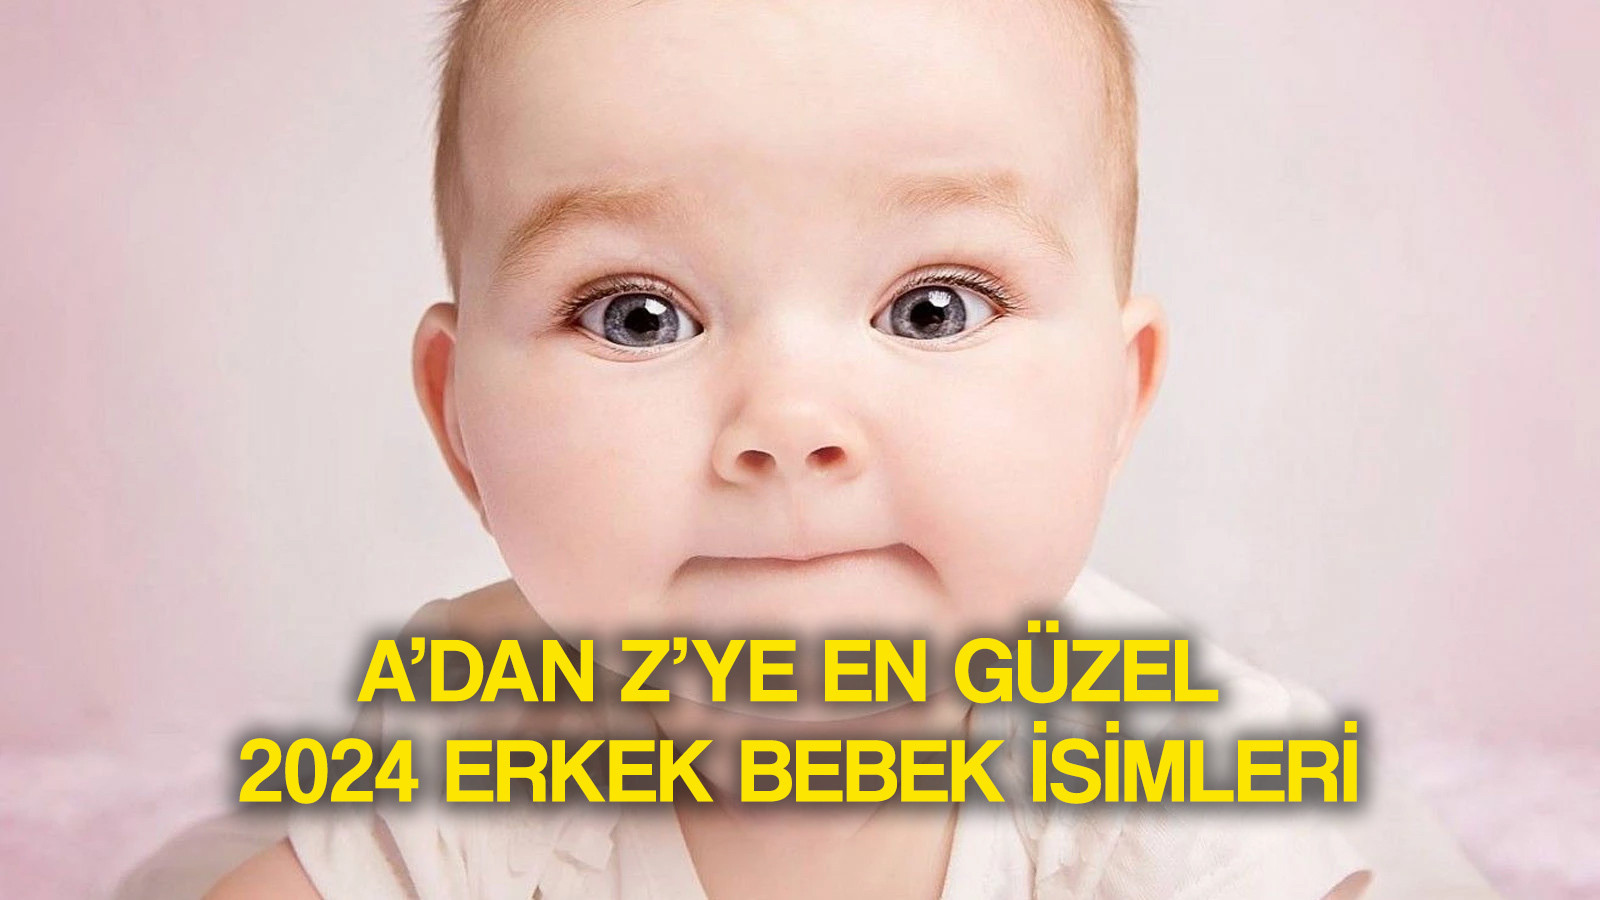 Erkek bebek isimleri 2024 listesinde öne çıkan modern, dini, anlamlı isimlerden Alparslan, Talha, Can, Yusuf, Emir, Arda, Yiğit öne çıkıyor.